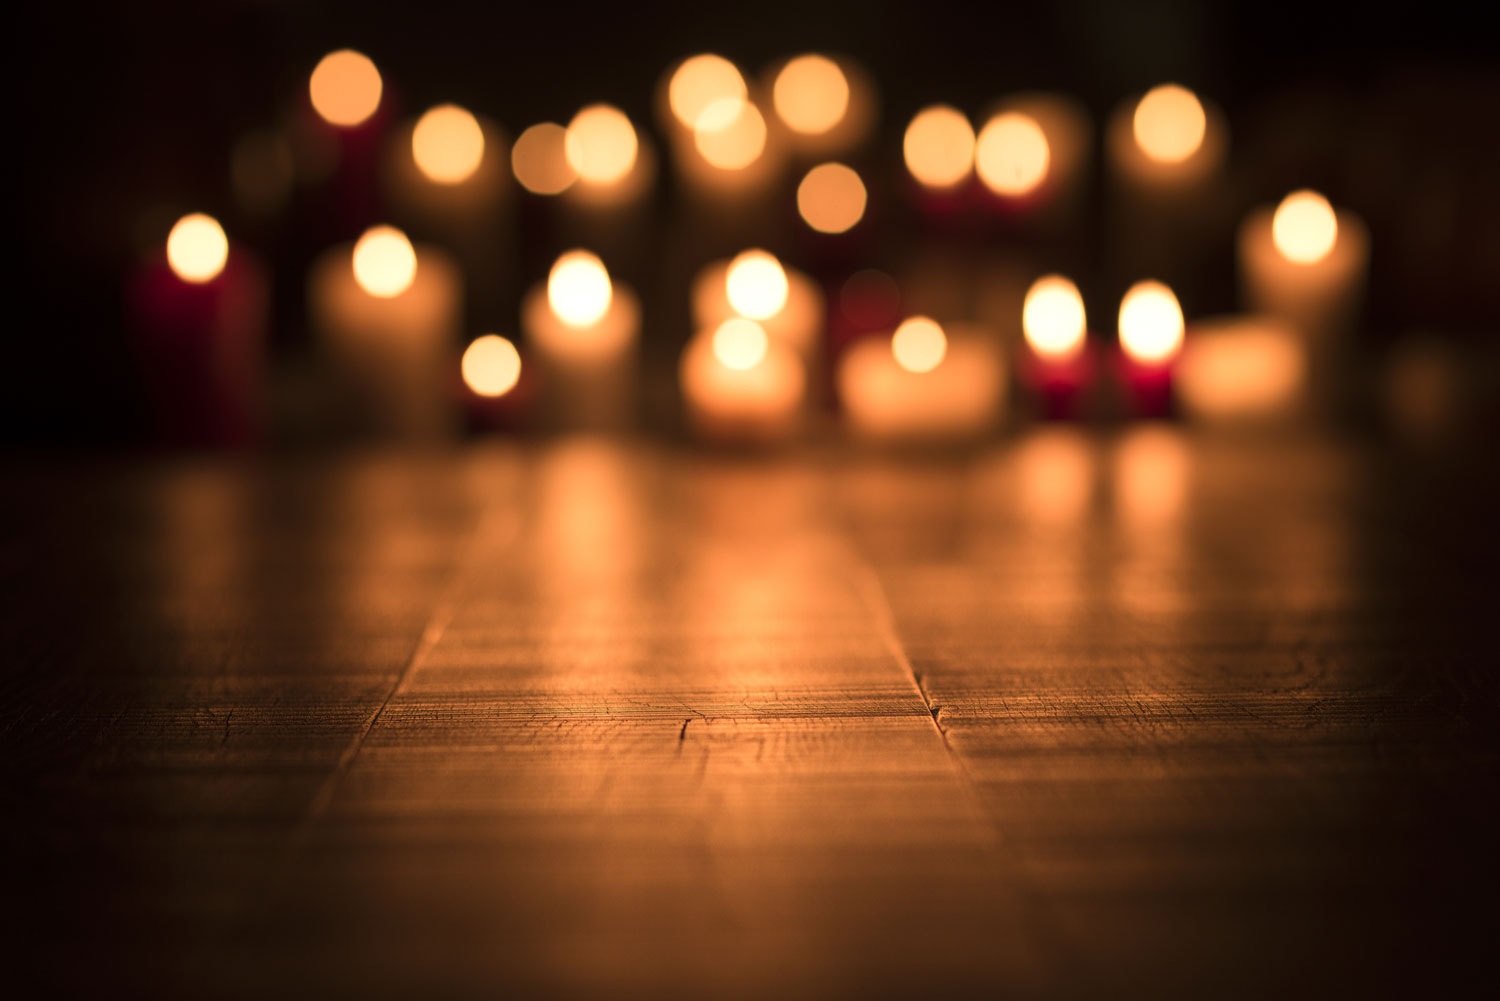 Vue de bougies allumées dans une église.